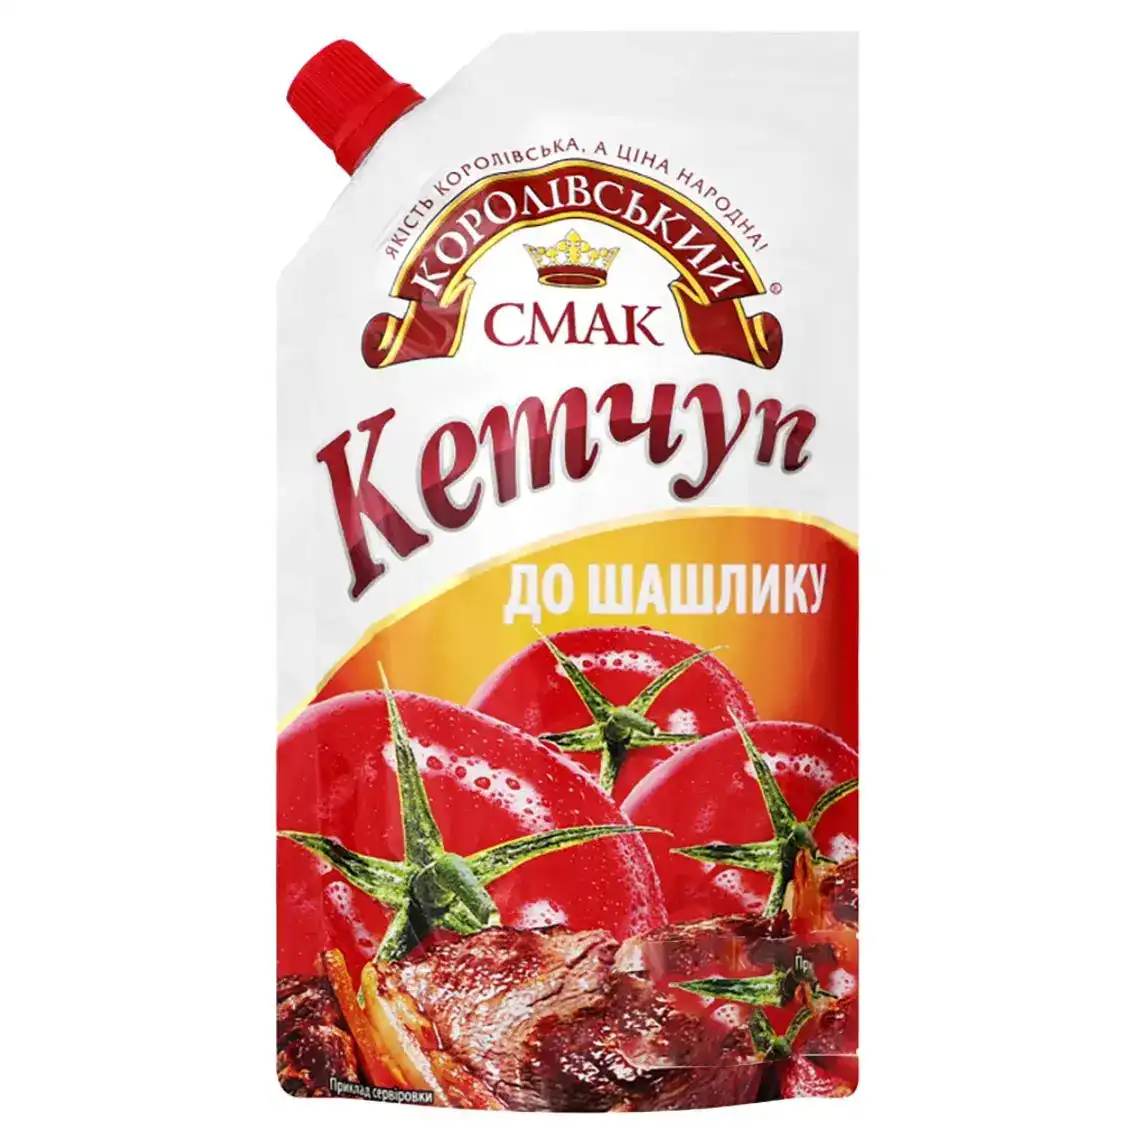 Кетчуп Королівський смак до шашлику 140 г